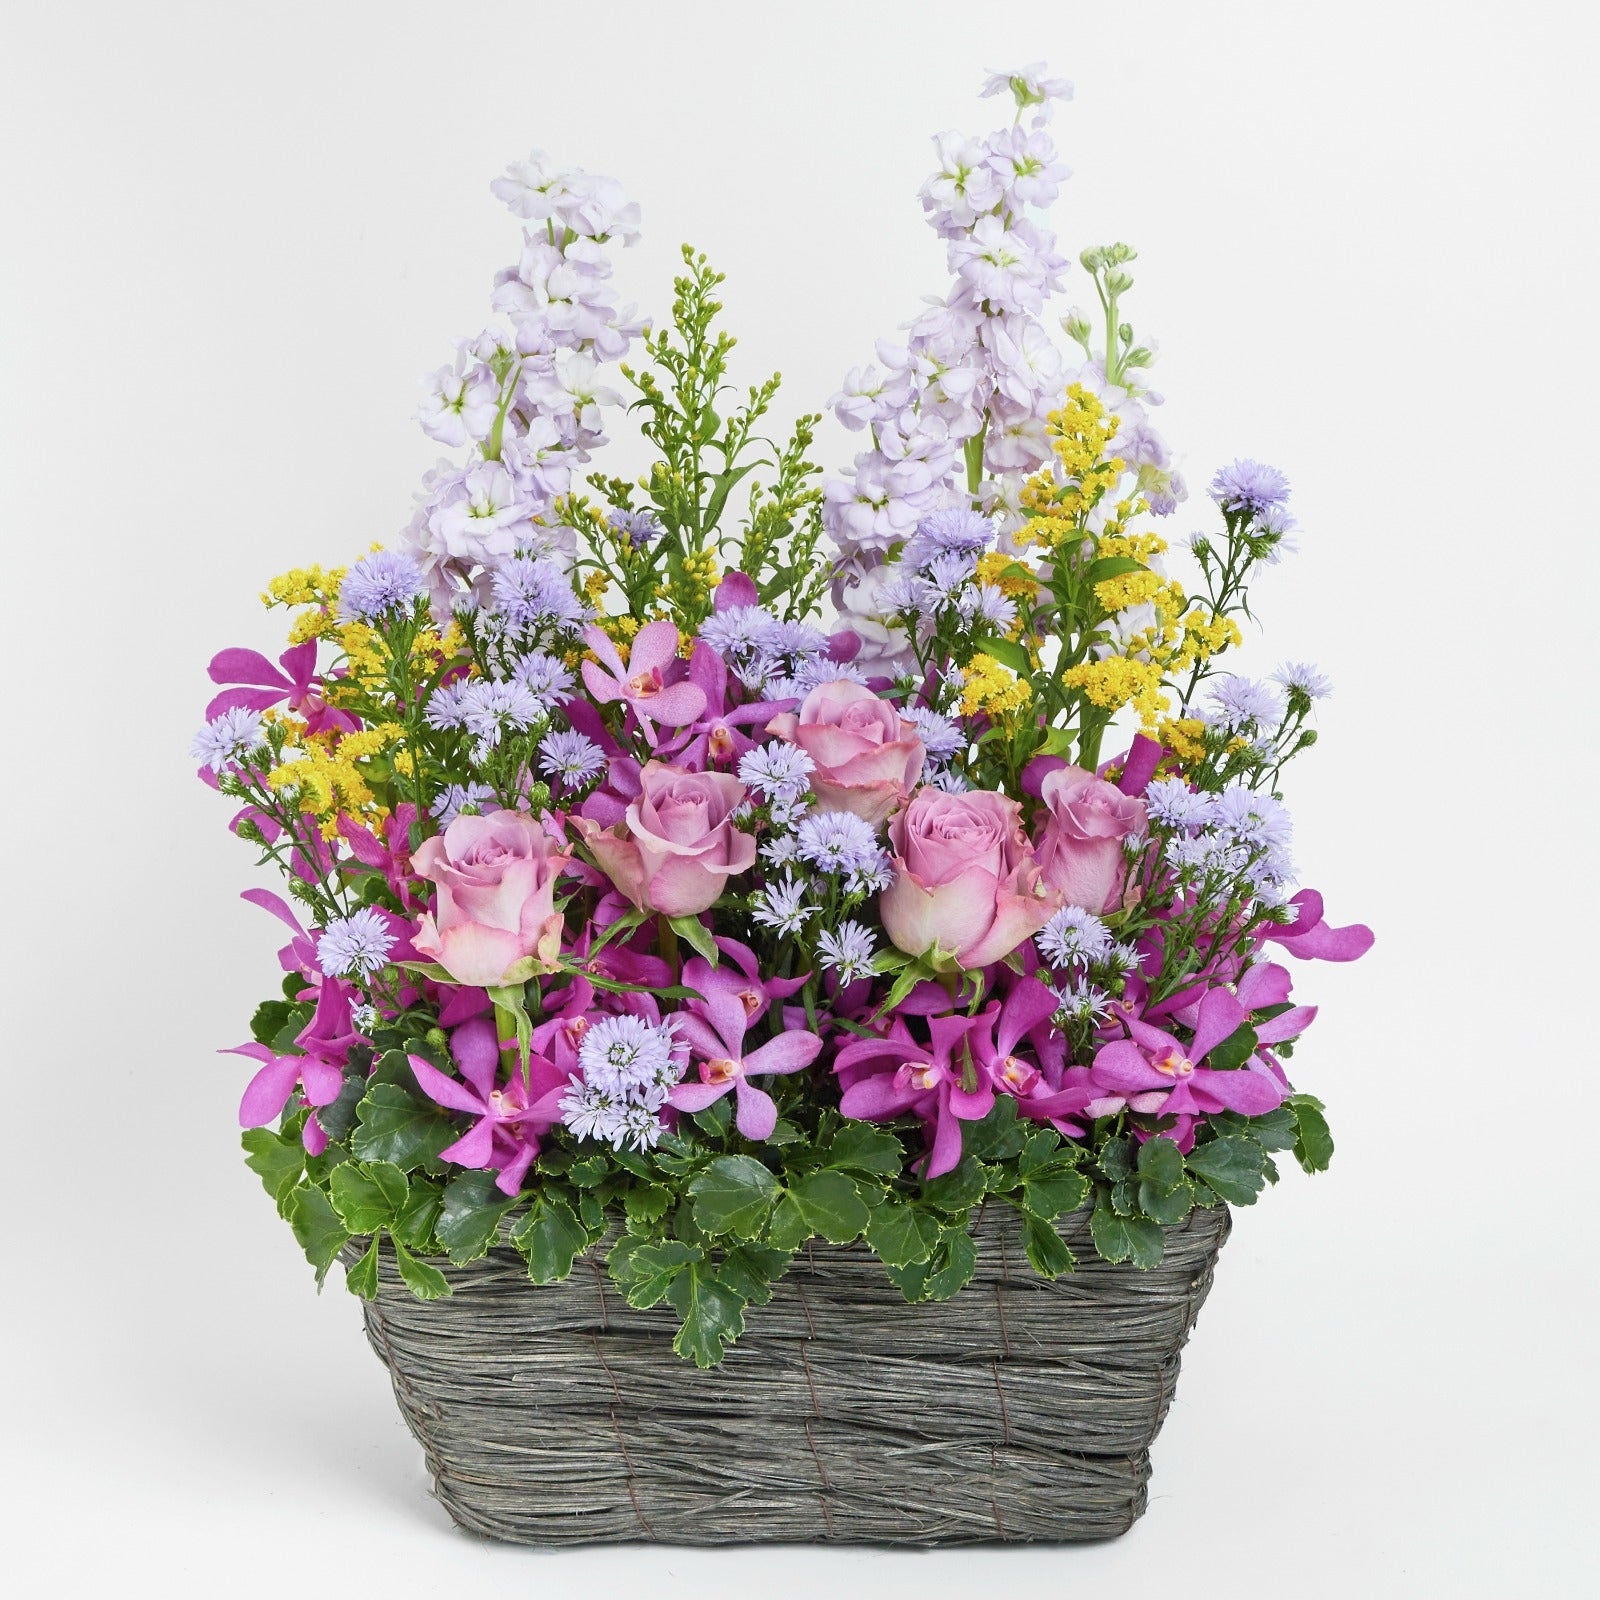 紫玫瑰日射花禮 Purple rose and stock flower basket